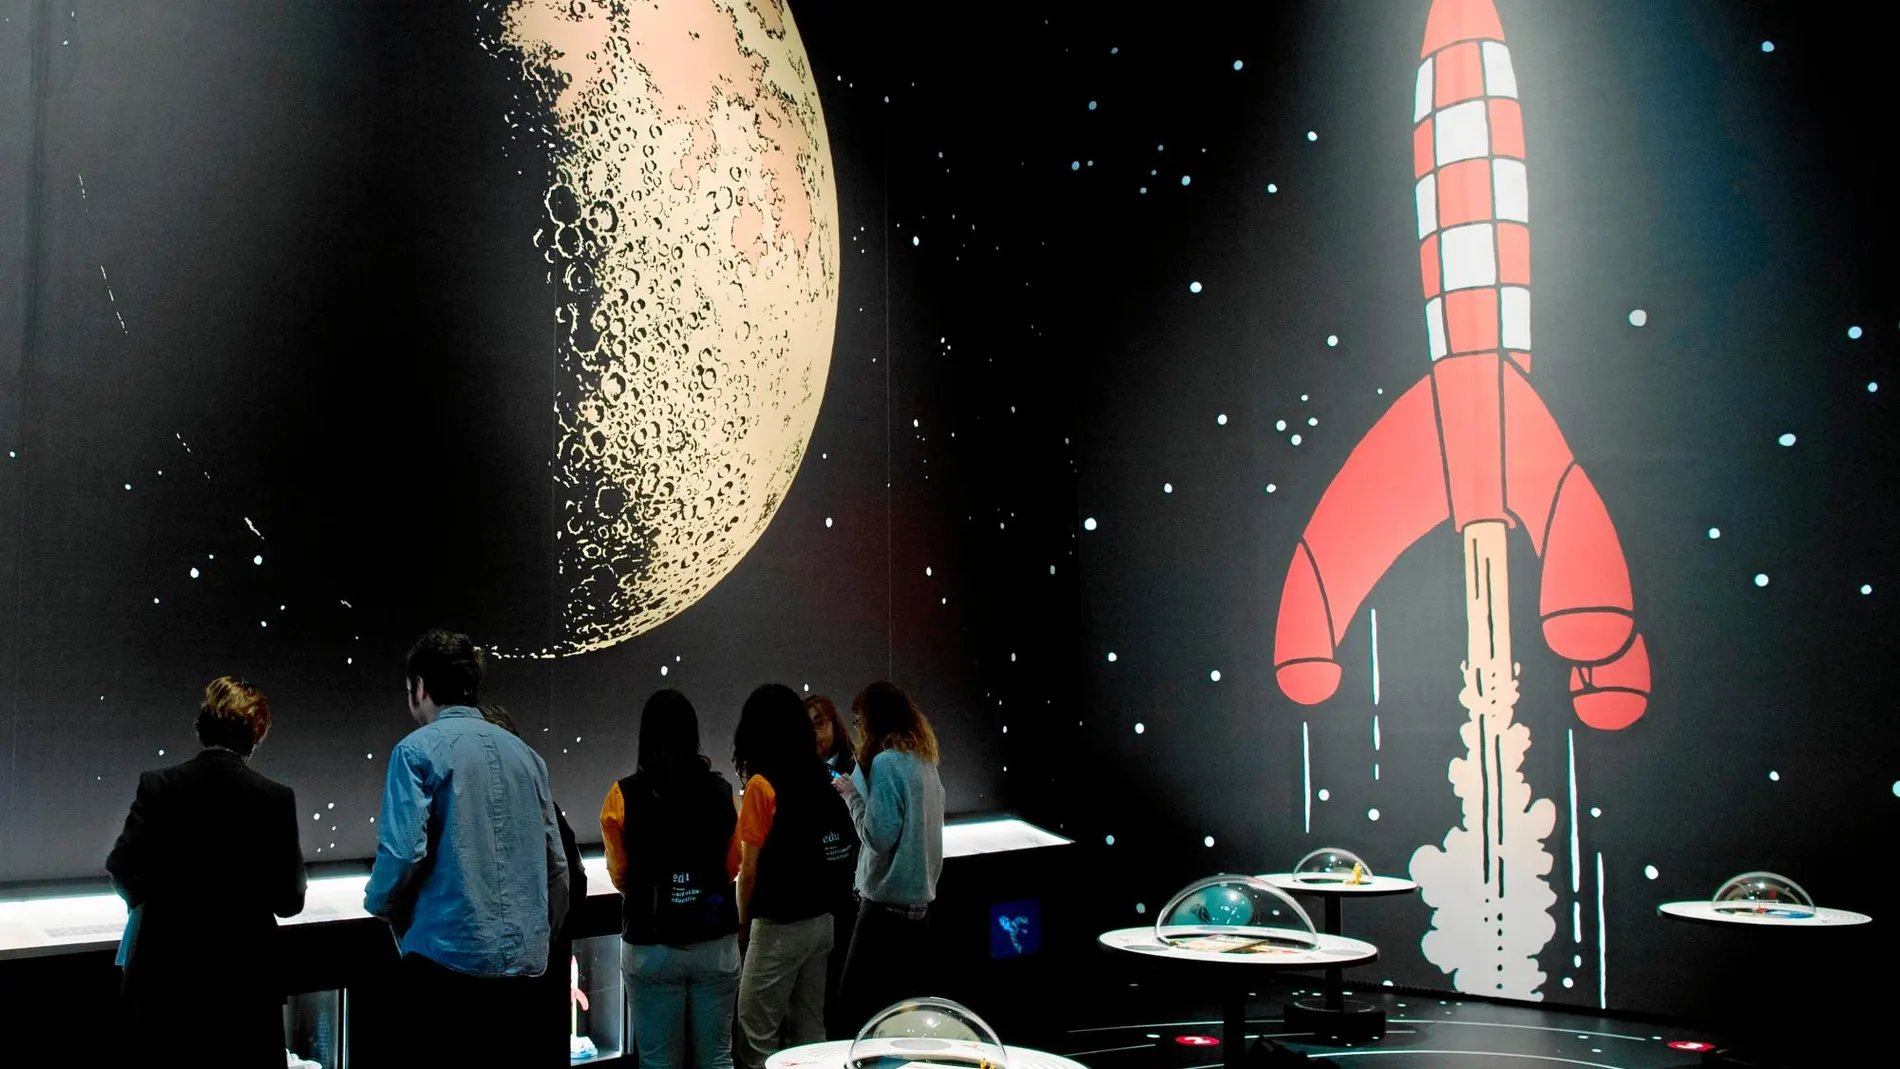 Una de las salas de la exposición sobre el aterrizaje en la luna, con el cohete de Tintín como protagonista